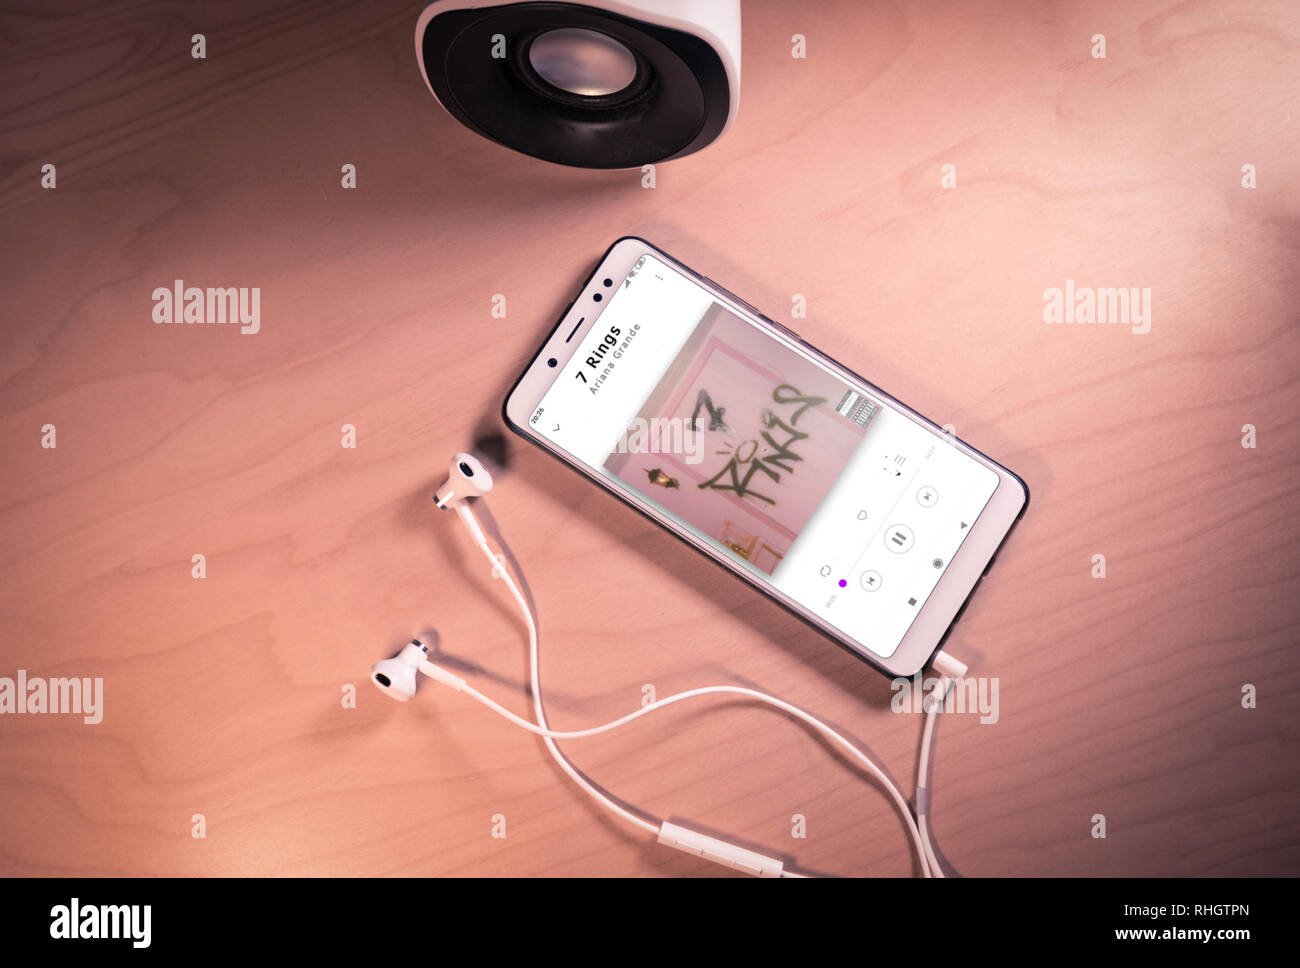 Top visualizza immagine di smartphone,auricolari e altoparlanti con Ariana grande canzone sullo schermo Foto Stock